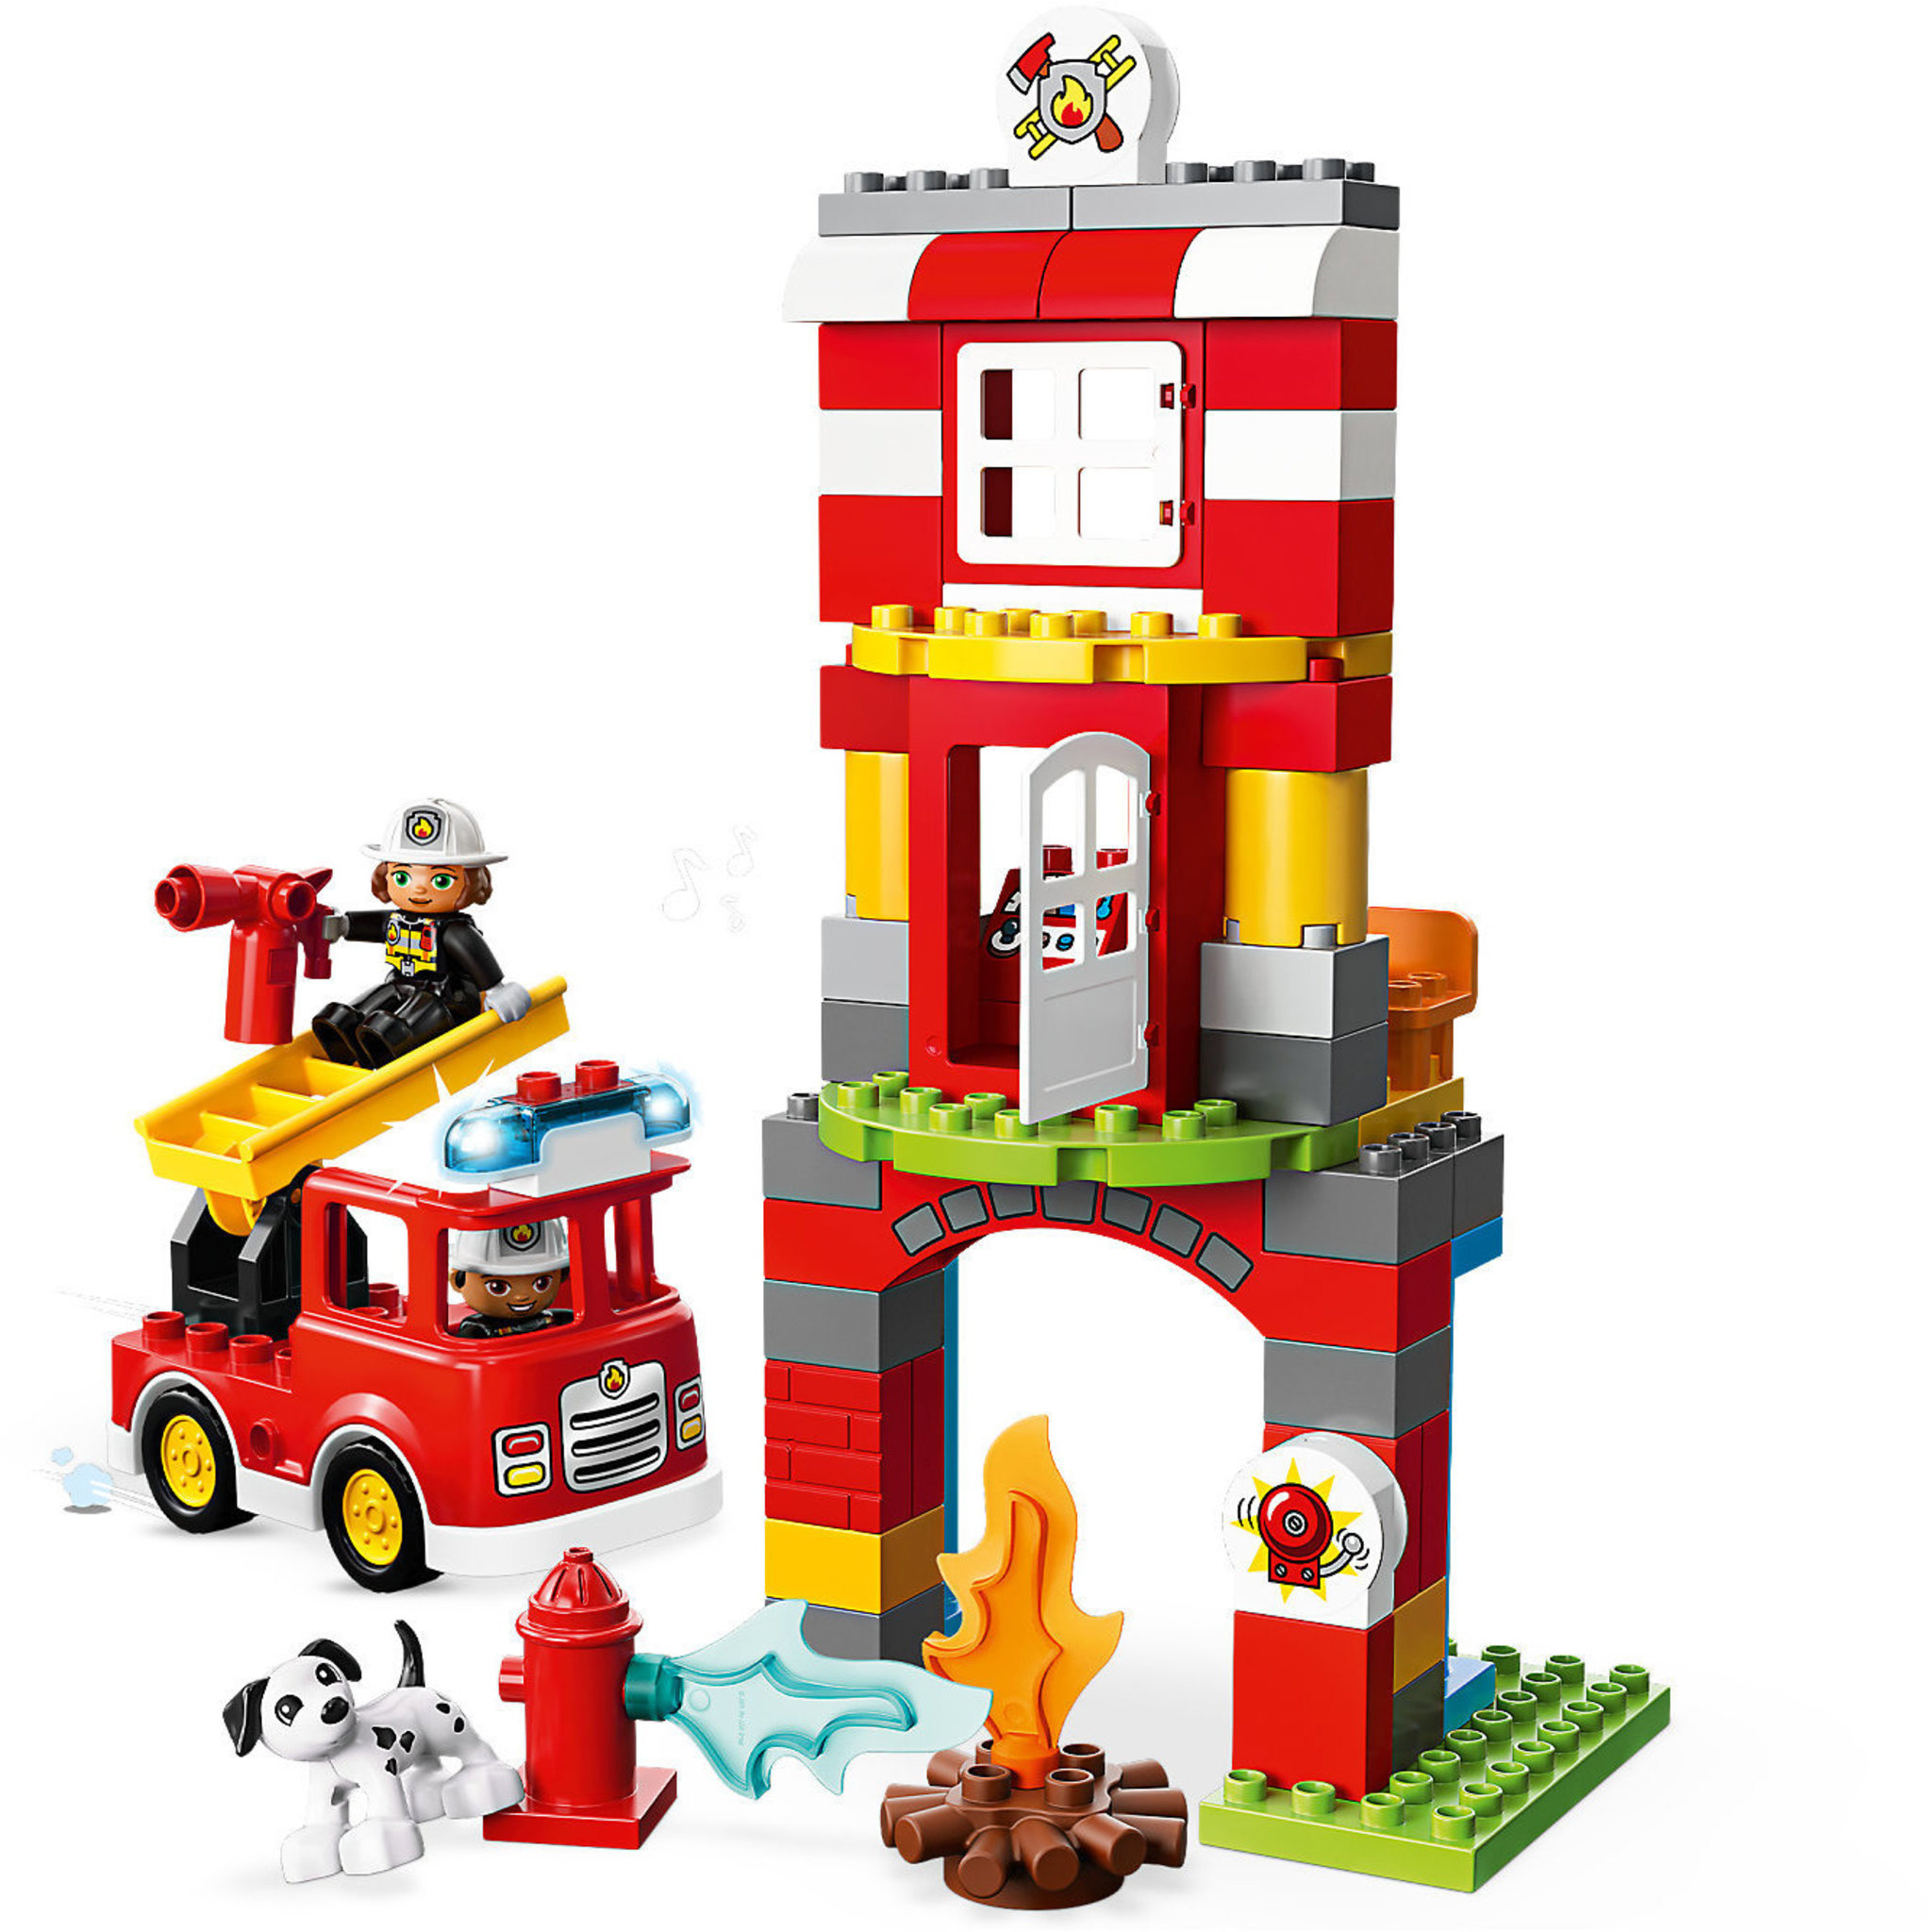 LEGO DUPLO Town Caserma dei Pompieri, Include Camion Giocattolo e 2 Vigili  del Fuoco, con Luci e Suoni, per Bambini di 2-5 Anni, 10903